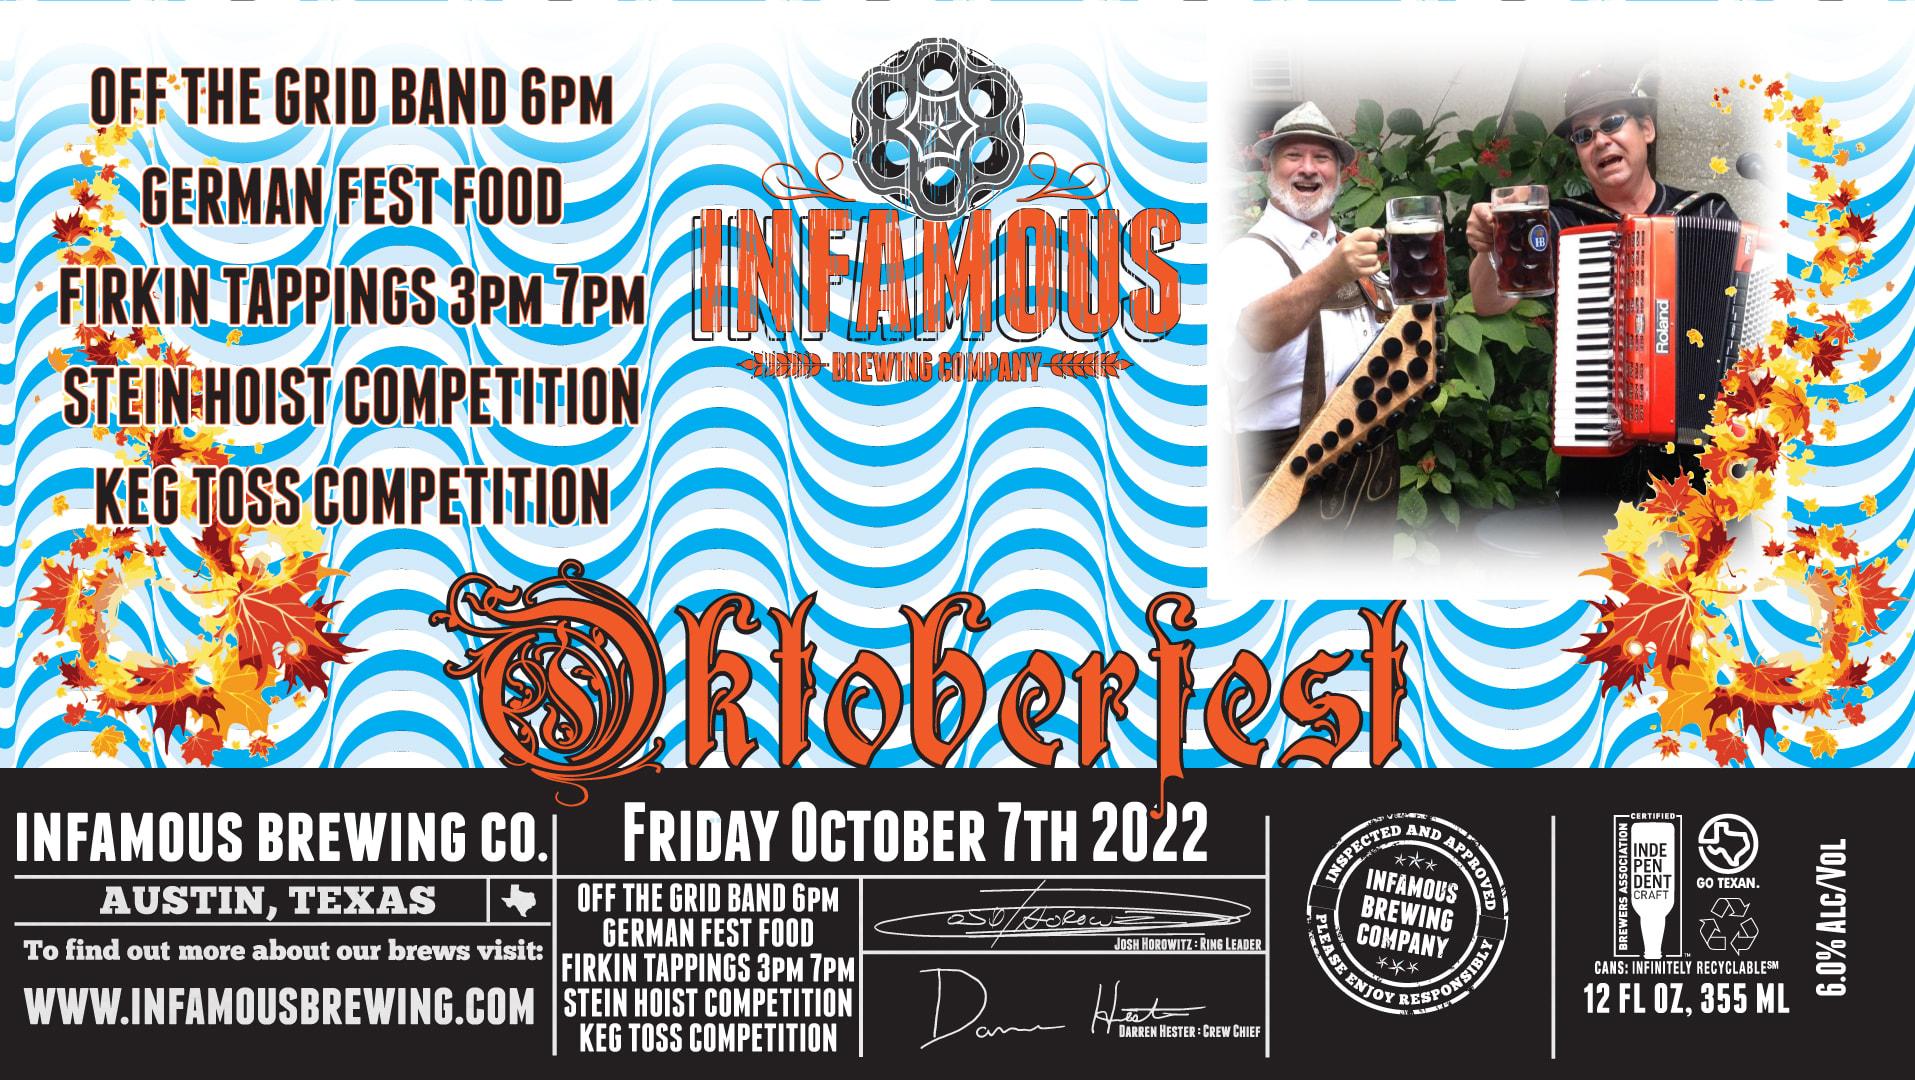 Oktoberfest At Infamous Brewing
Fri Oct 7, 3:00 PM - Fri Oct 7, 10:00 PM